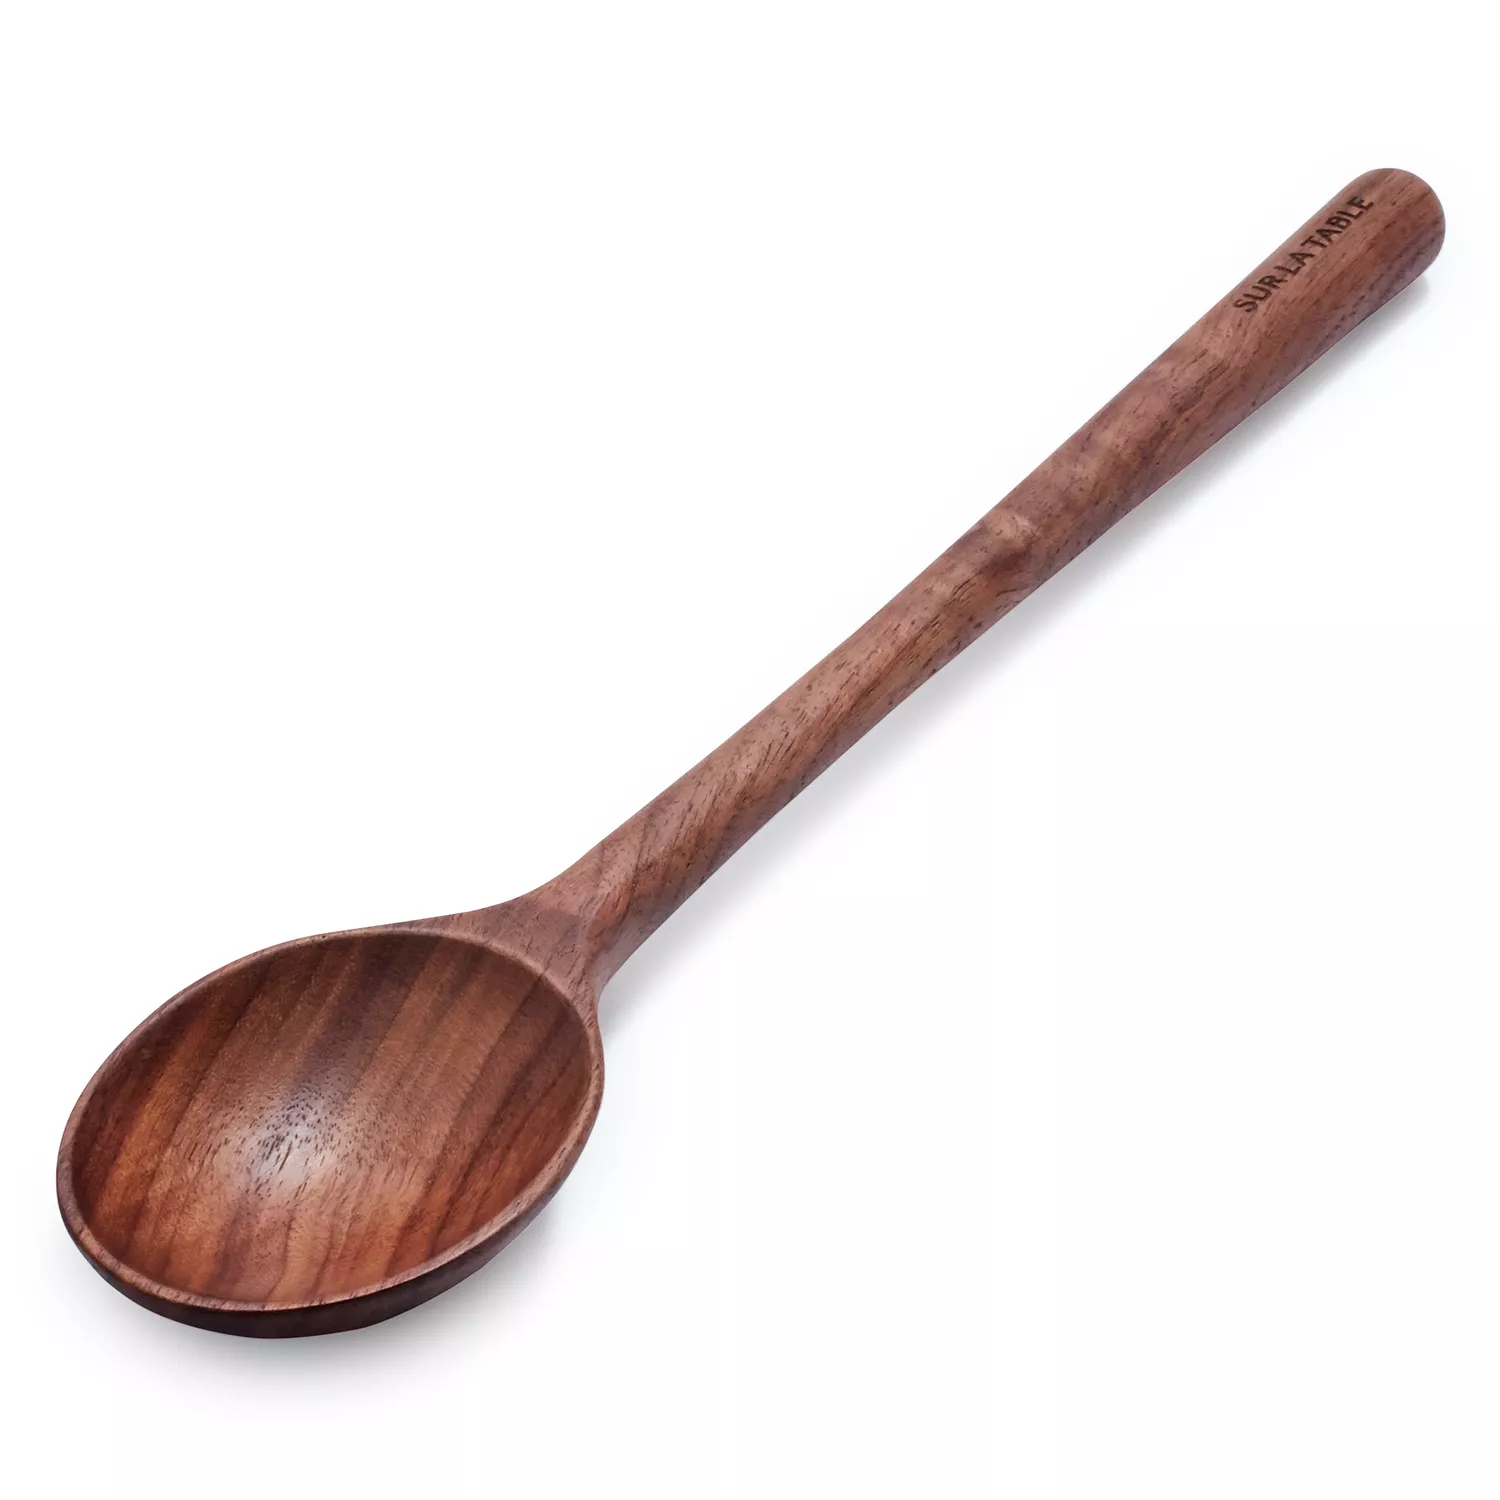 Sur La Table Measuring Spoons, Set of 4, Gold